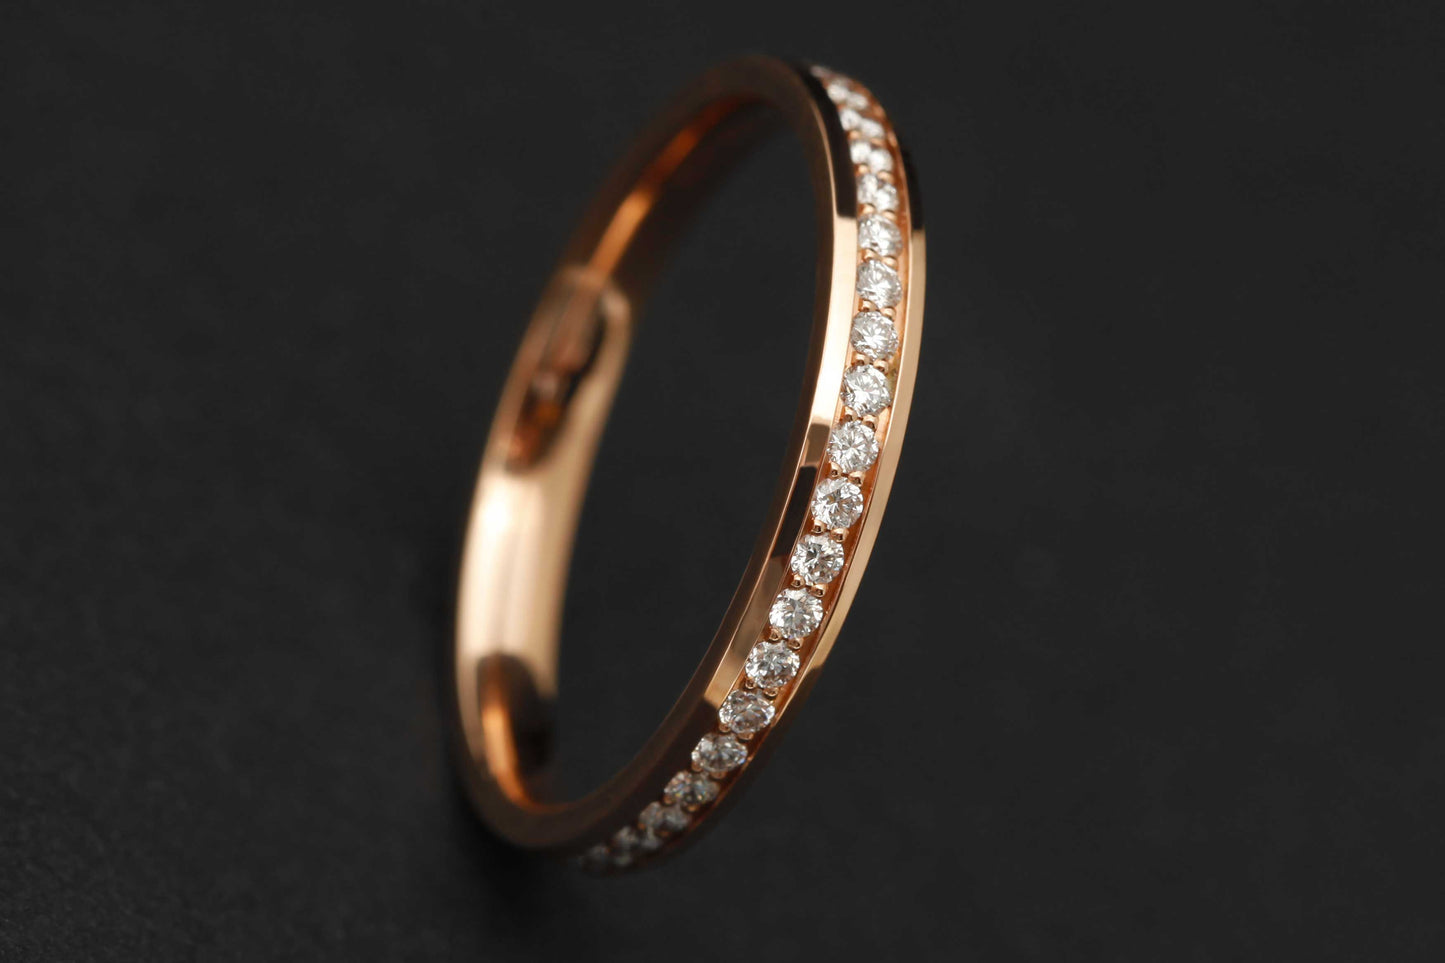 Compagnon en or rose entièrement serti de diamants 1.3mm (sertissage néocanal)